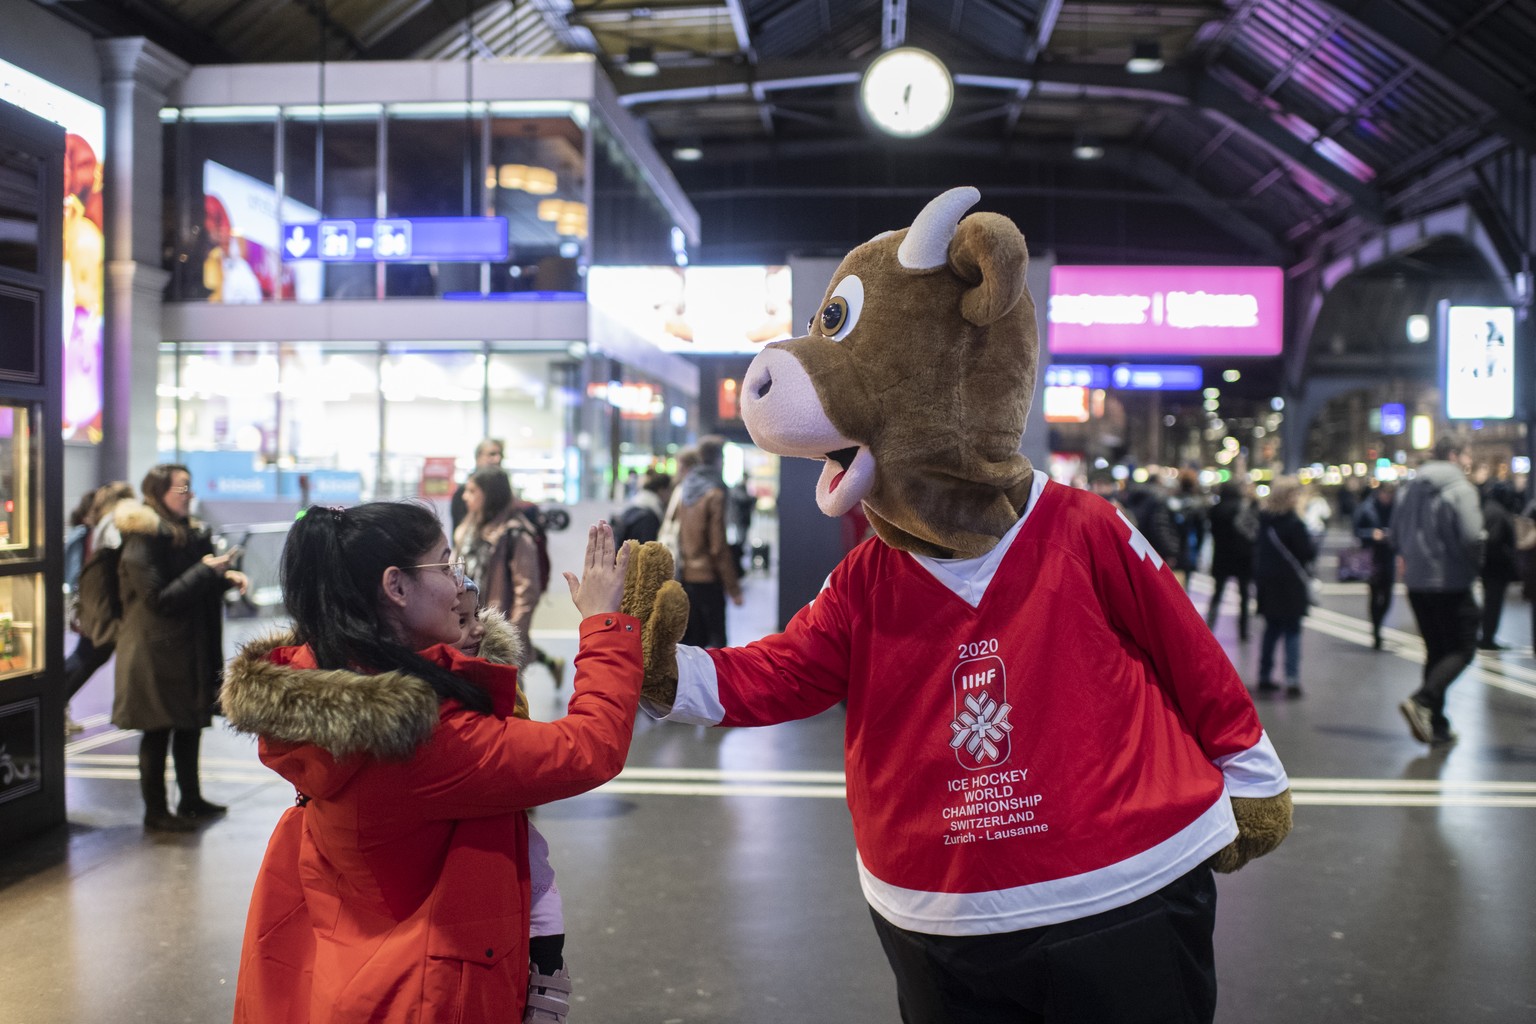 Das Maskottchen Cooly unterhaelt im Hauptbahnhof anlaesslich der 2020 IIHF Eishockey-WM im Mai, aufgenommen am Montag, 3. Februar 2020 in Zuerich. (KEYSTONE/Ennio Leanza)